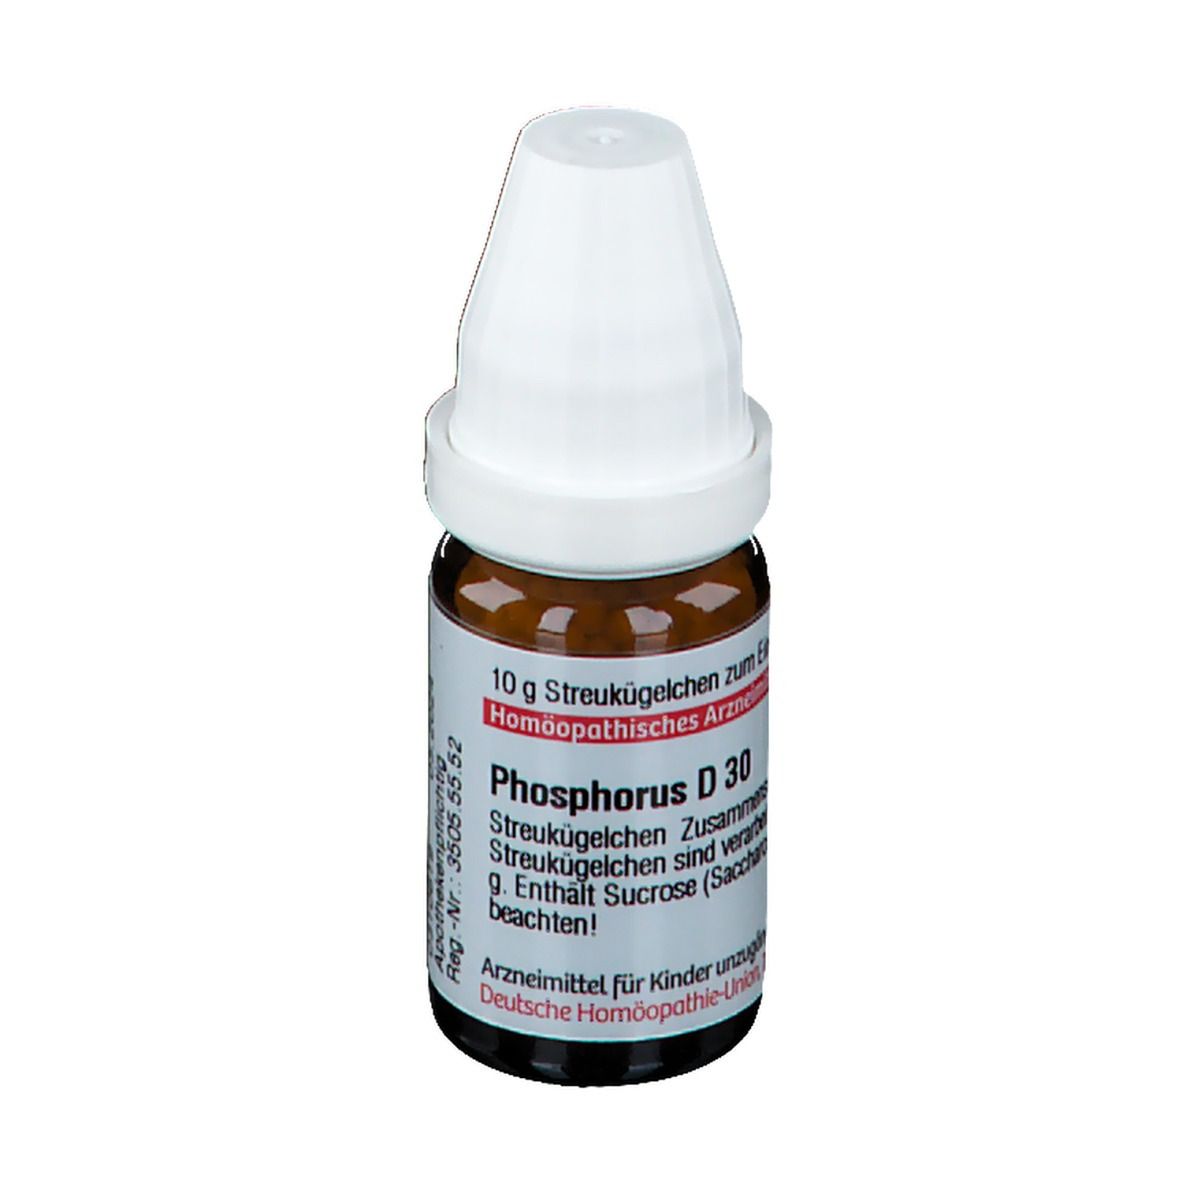 DHU Phosphorus D30